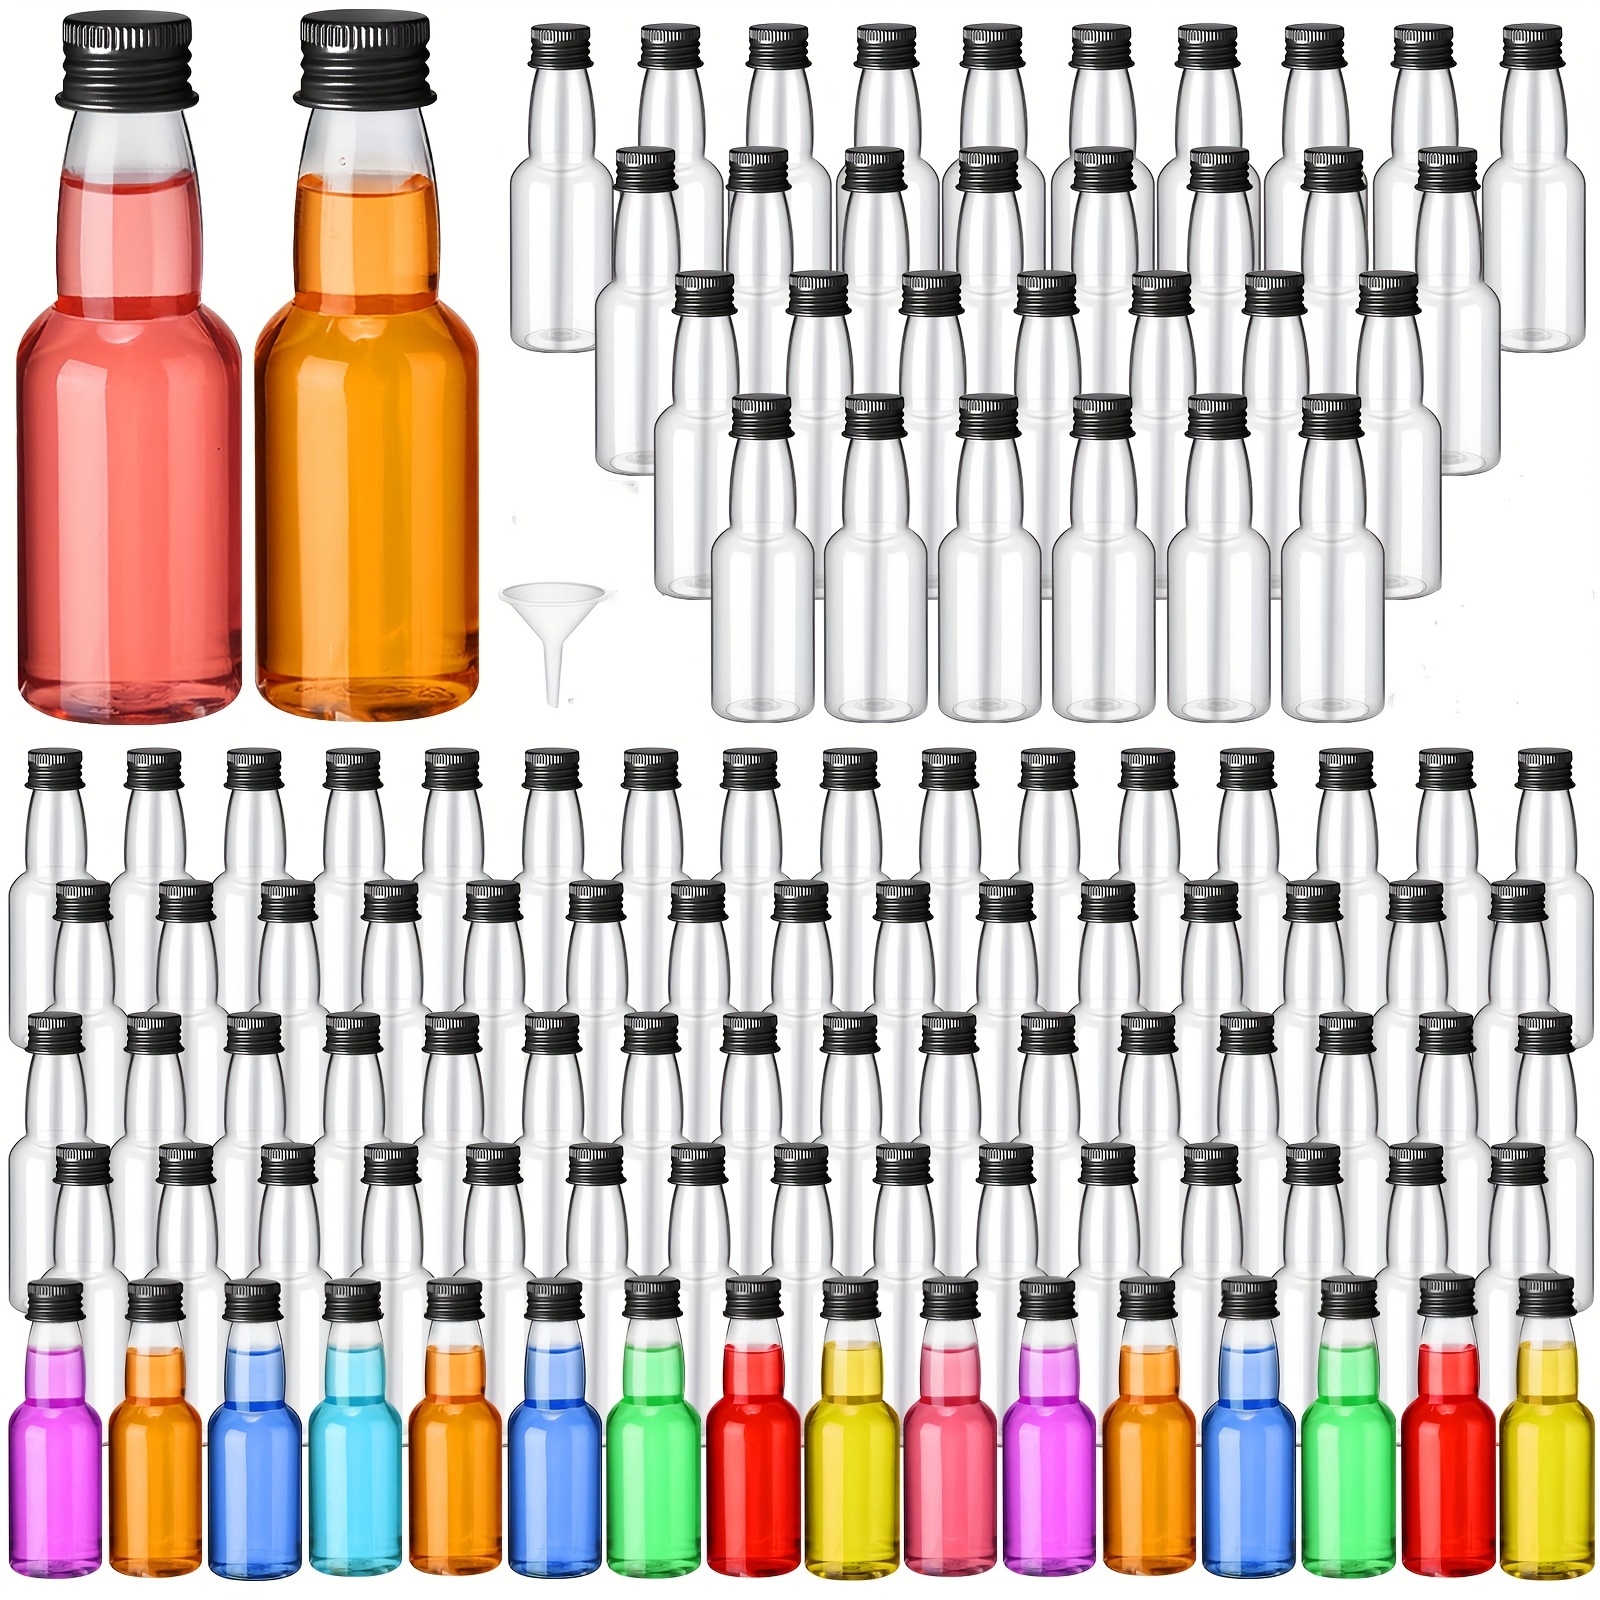  200 mini botellas de licor de 1.7 onzas, botella vacía de  plástico con tapa de rosca negra, mini botellas de vino, botellas de salsa  caliente, botellas de chupito con tapas, embudo